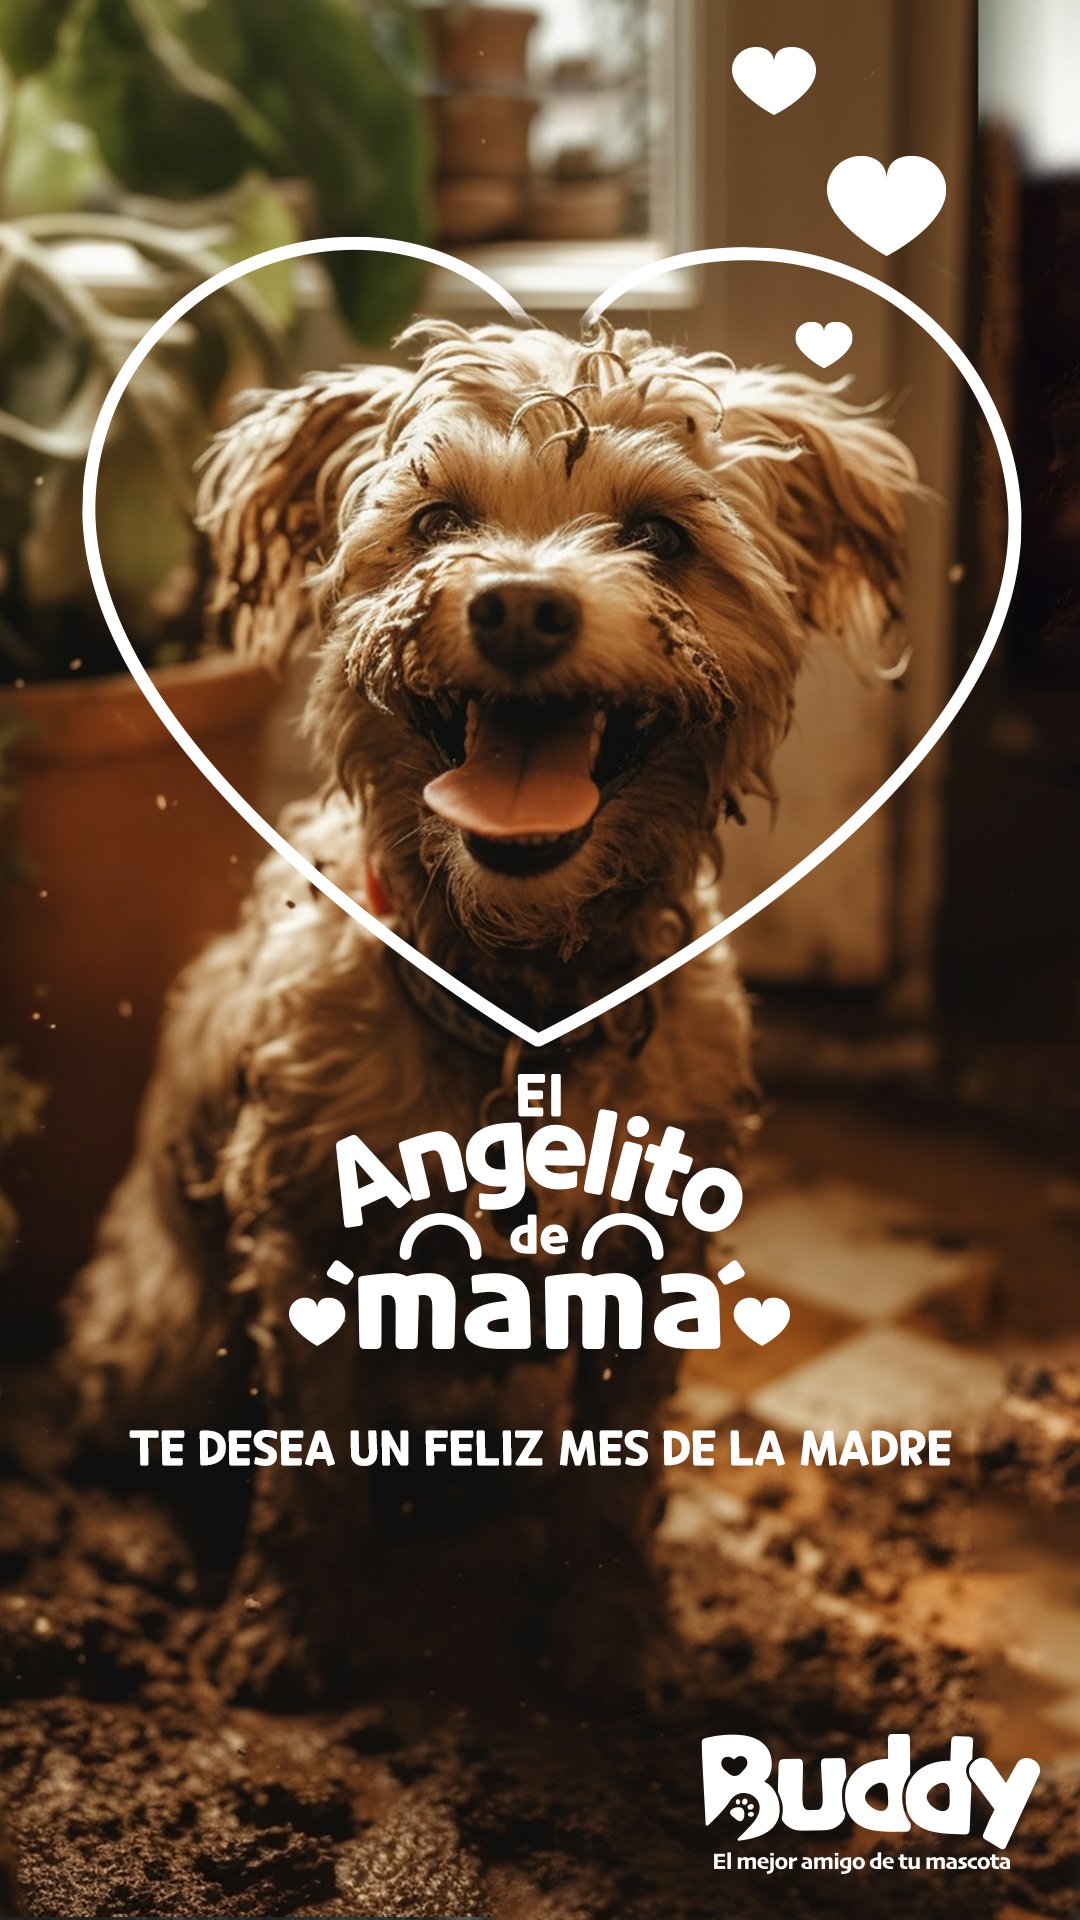 El Angelito de mamá story Doggy